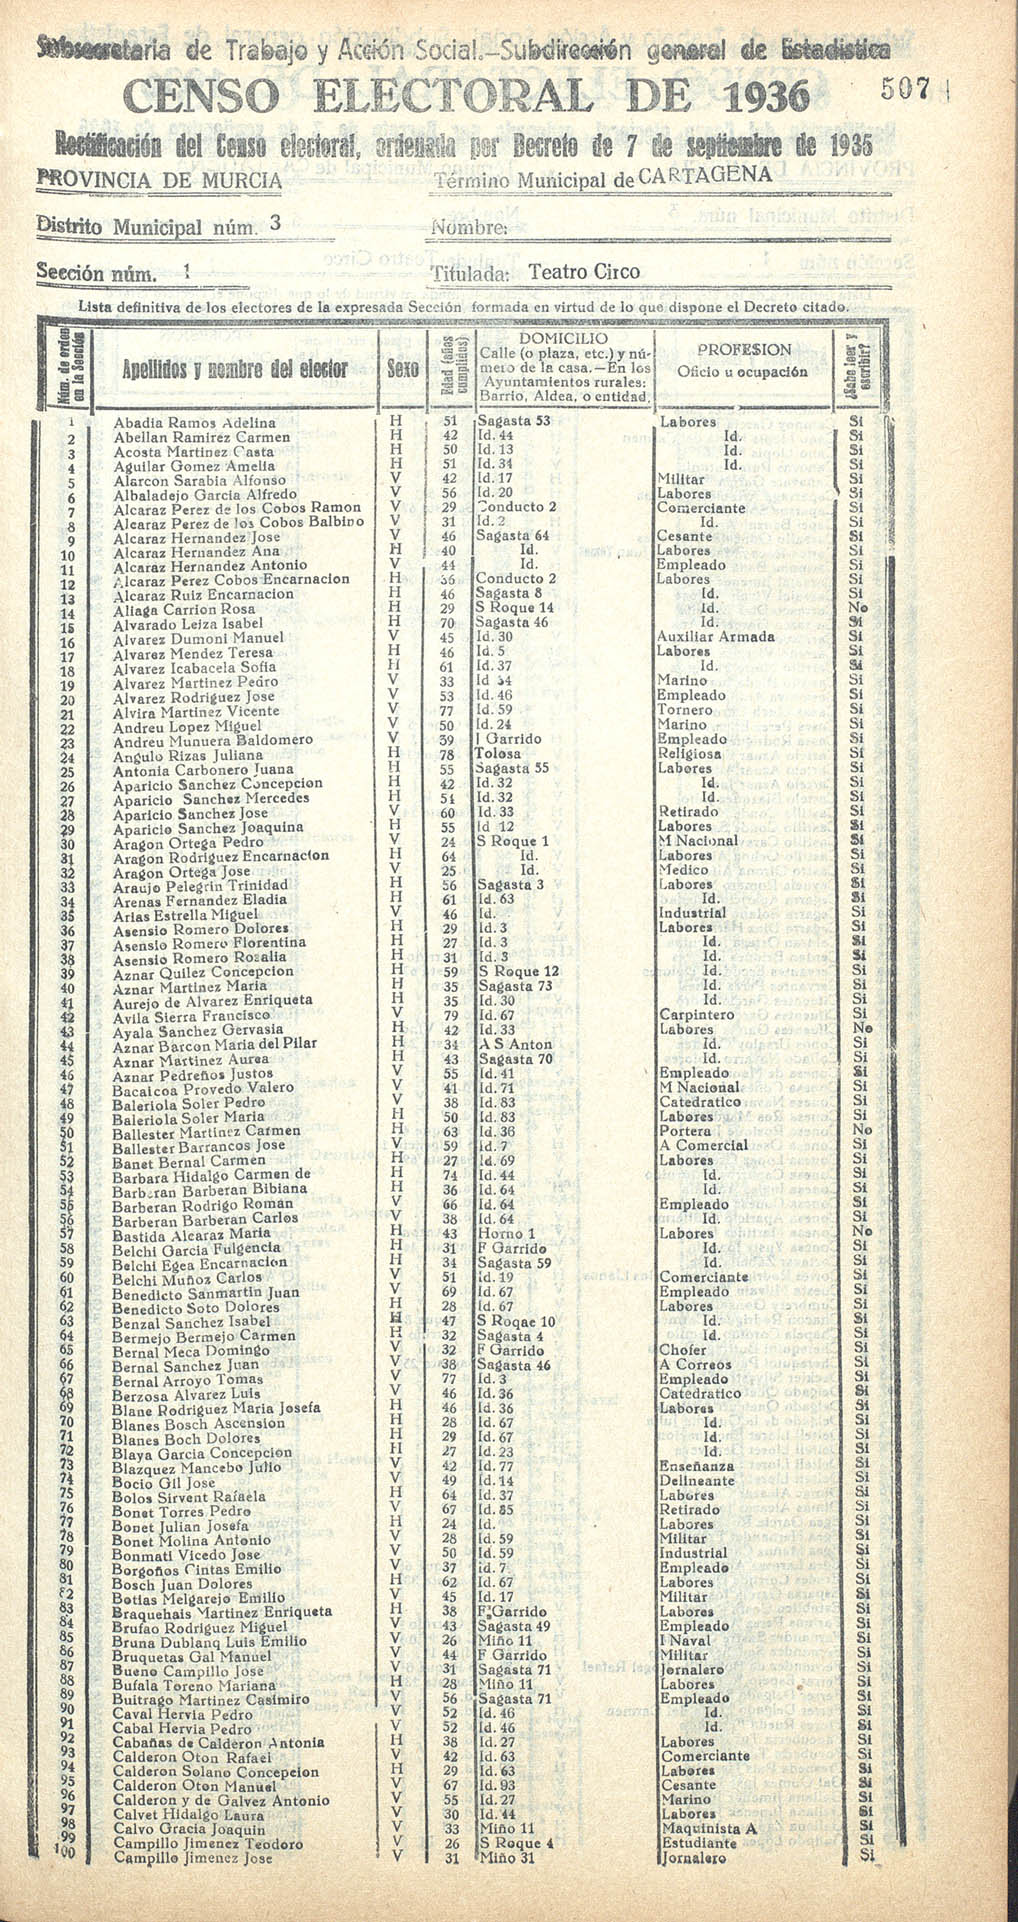 Censo electoral provincial de 1936. Cartagena. Distrito 3º. Sección 1ª, Teatro Circo